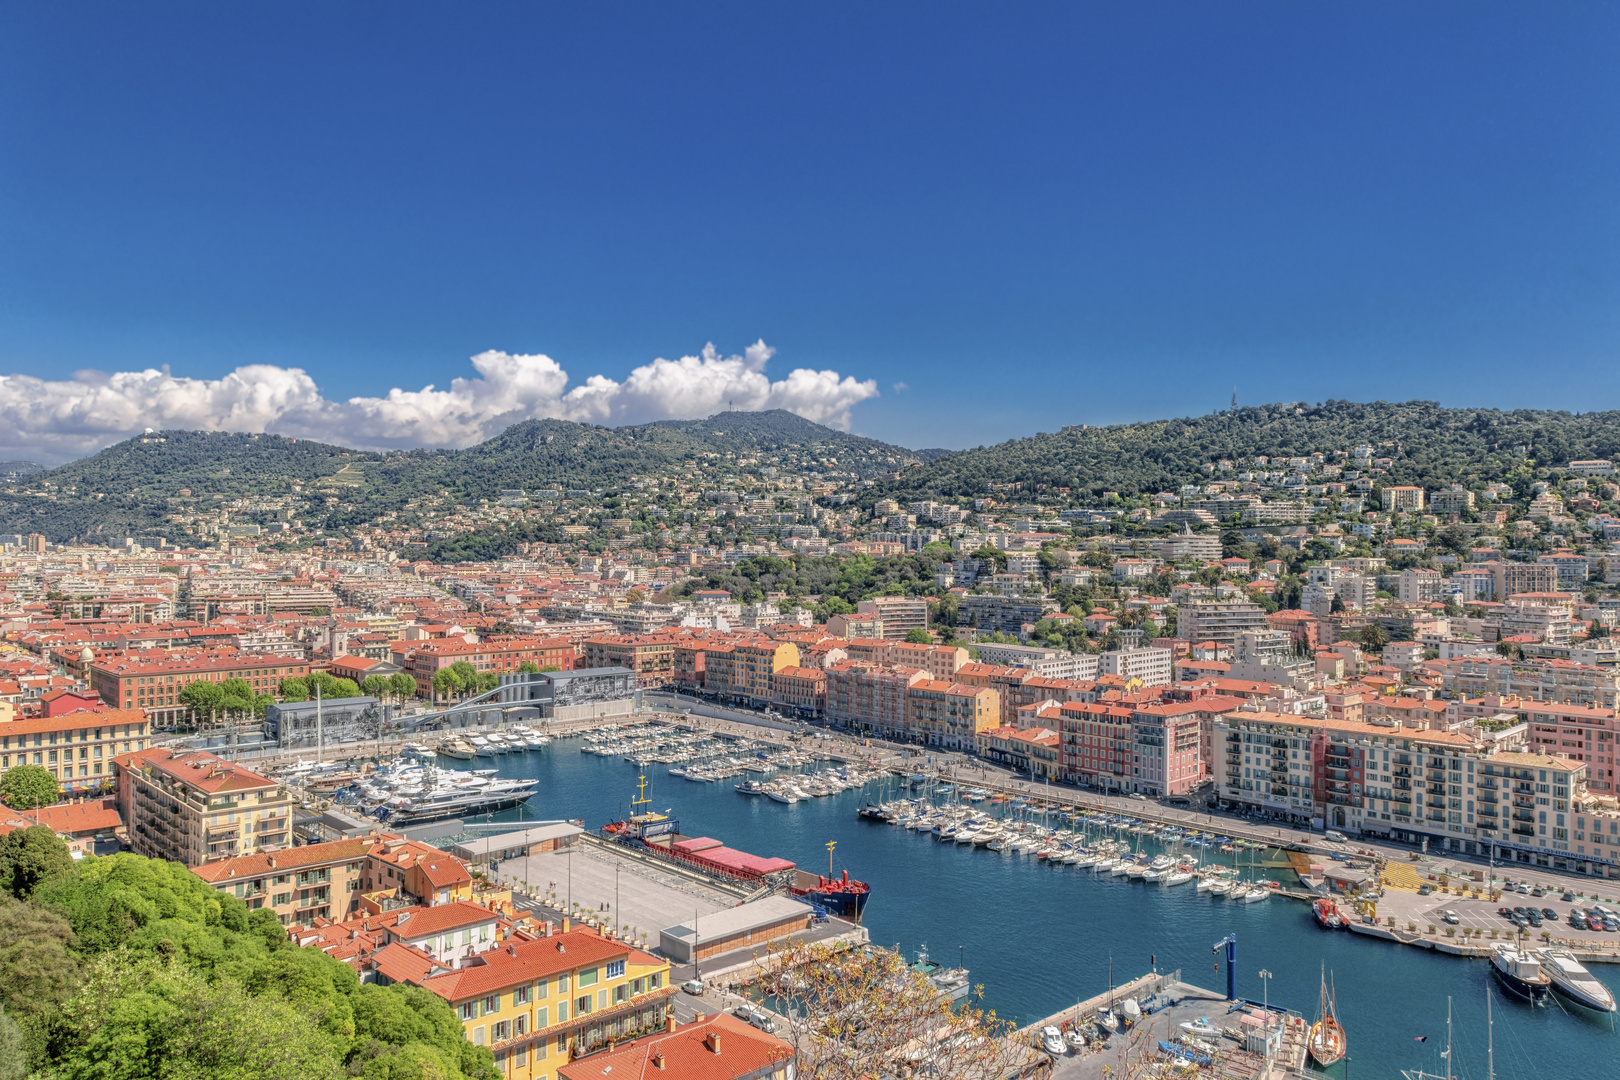 Blick auf den Hafen von Nizza